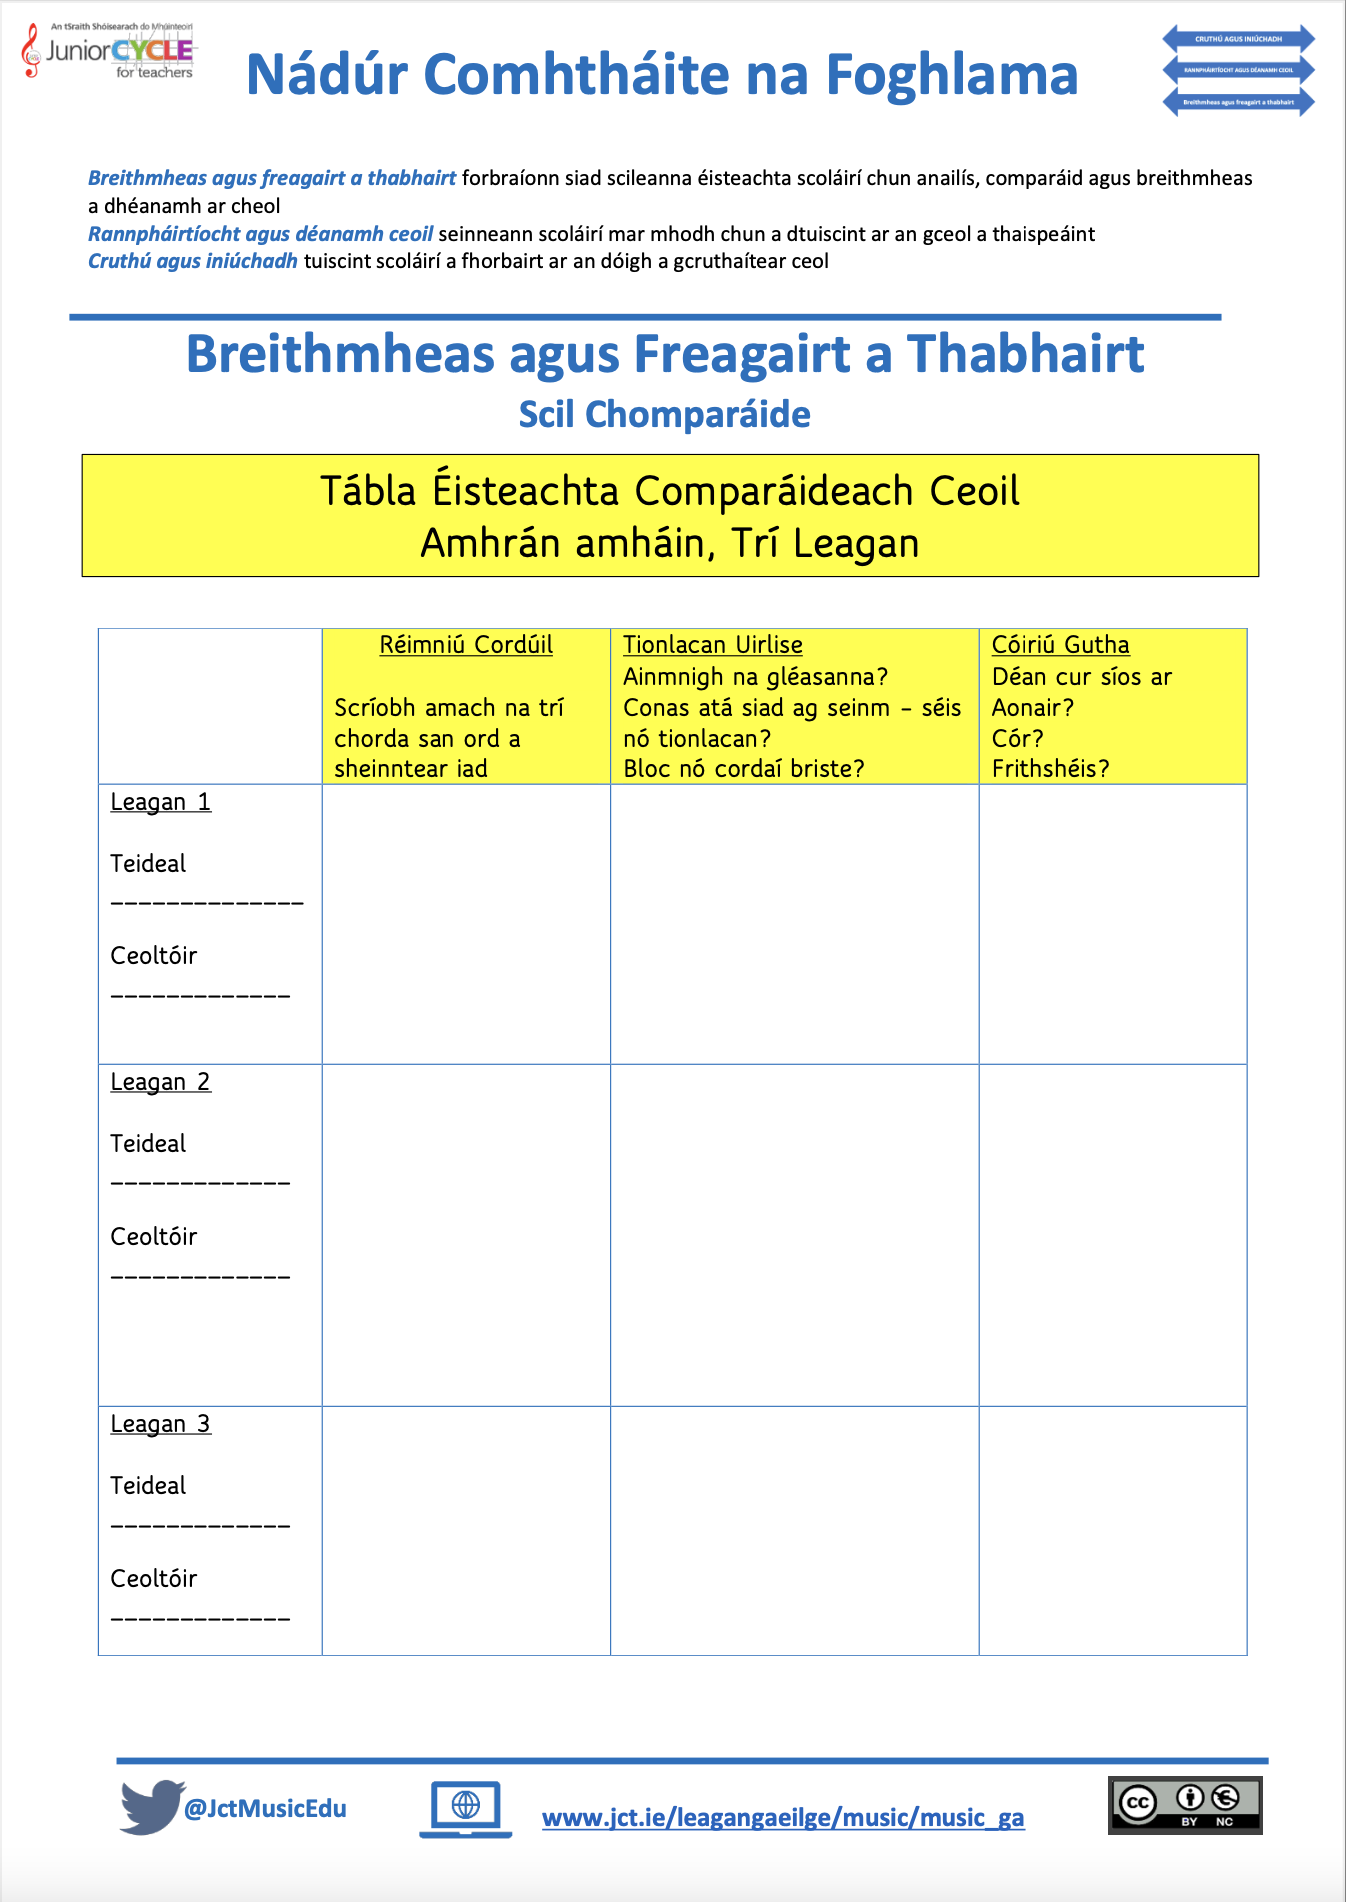 Nádúr Comhtháite na Foghlama: Breithmheas agus Freagairt a Thabhairt (Scil Chomparáide)